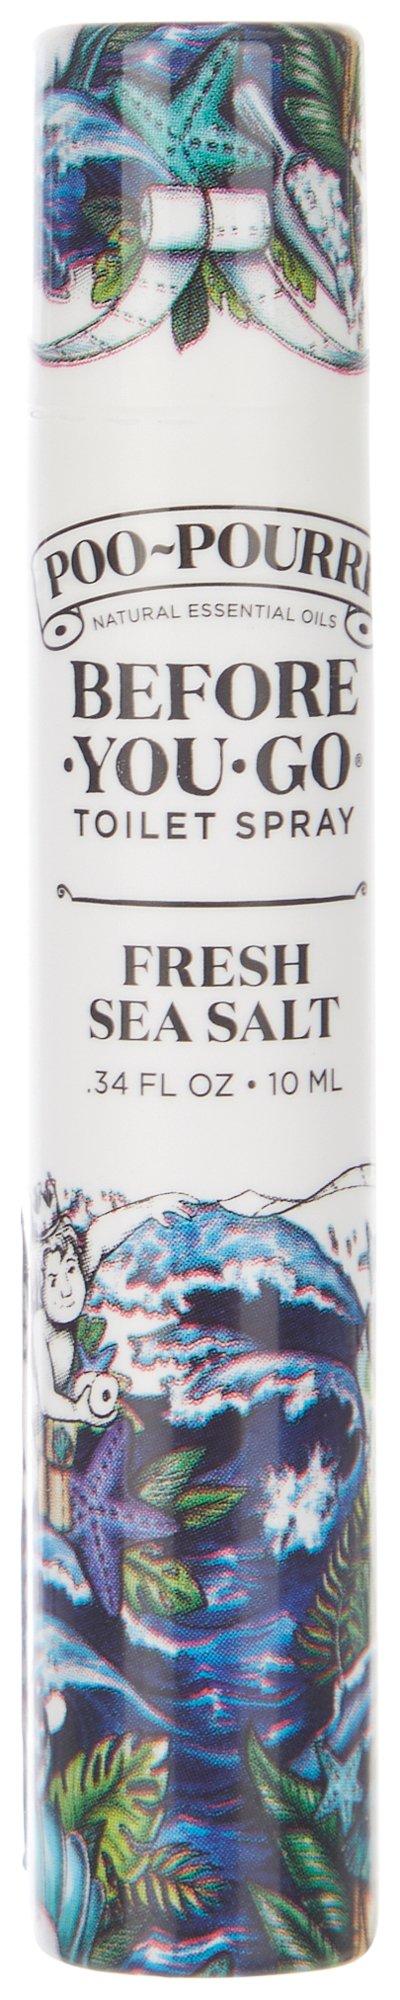 Poo-Pourri Fresh Sea Salt Before You Go Toilet Spray